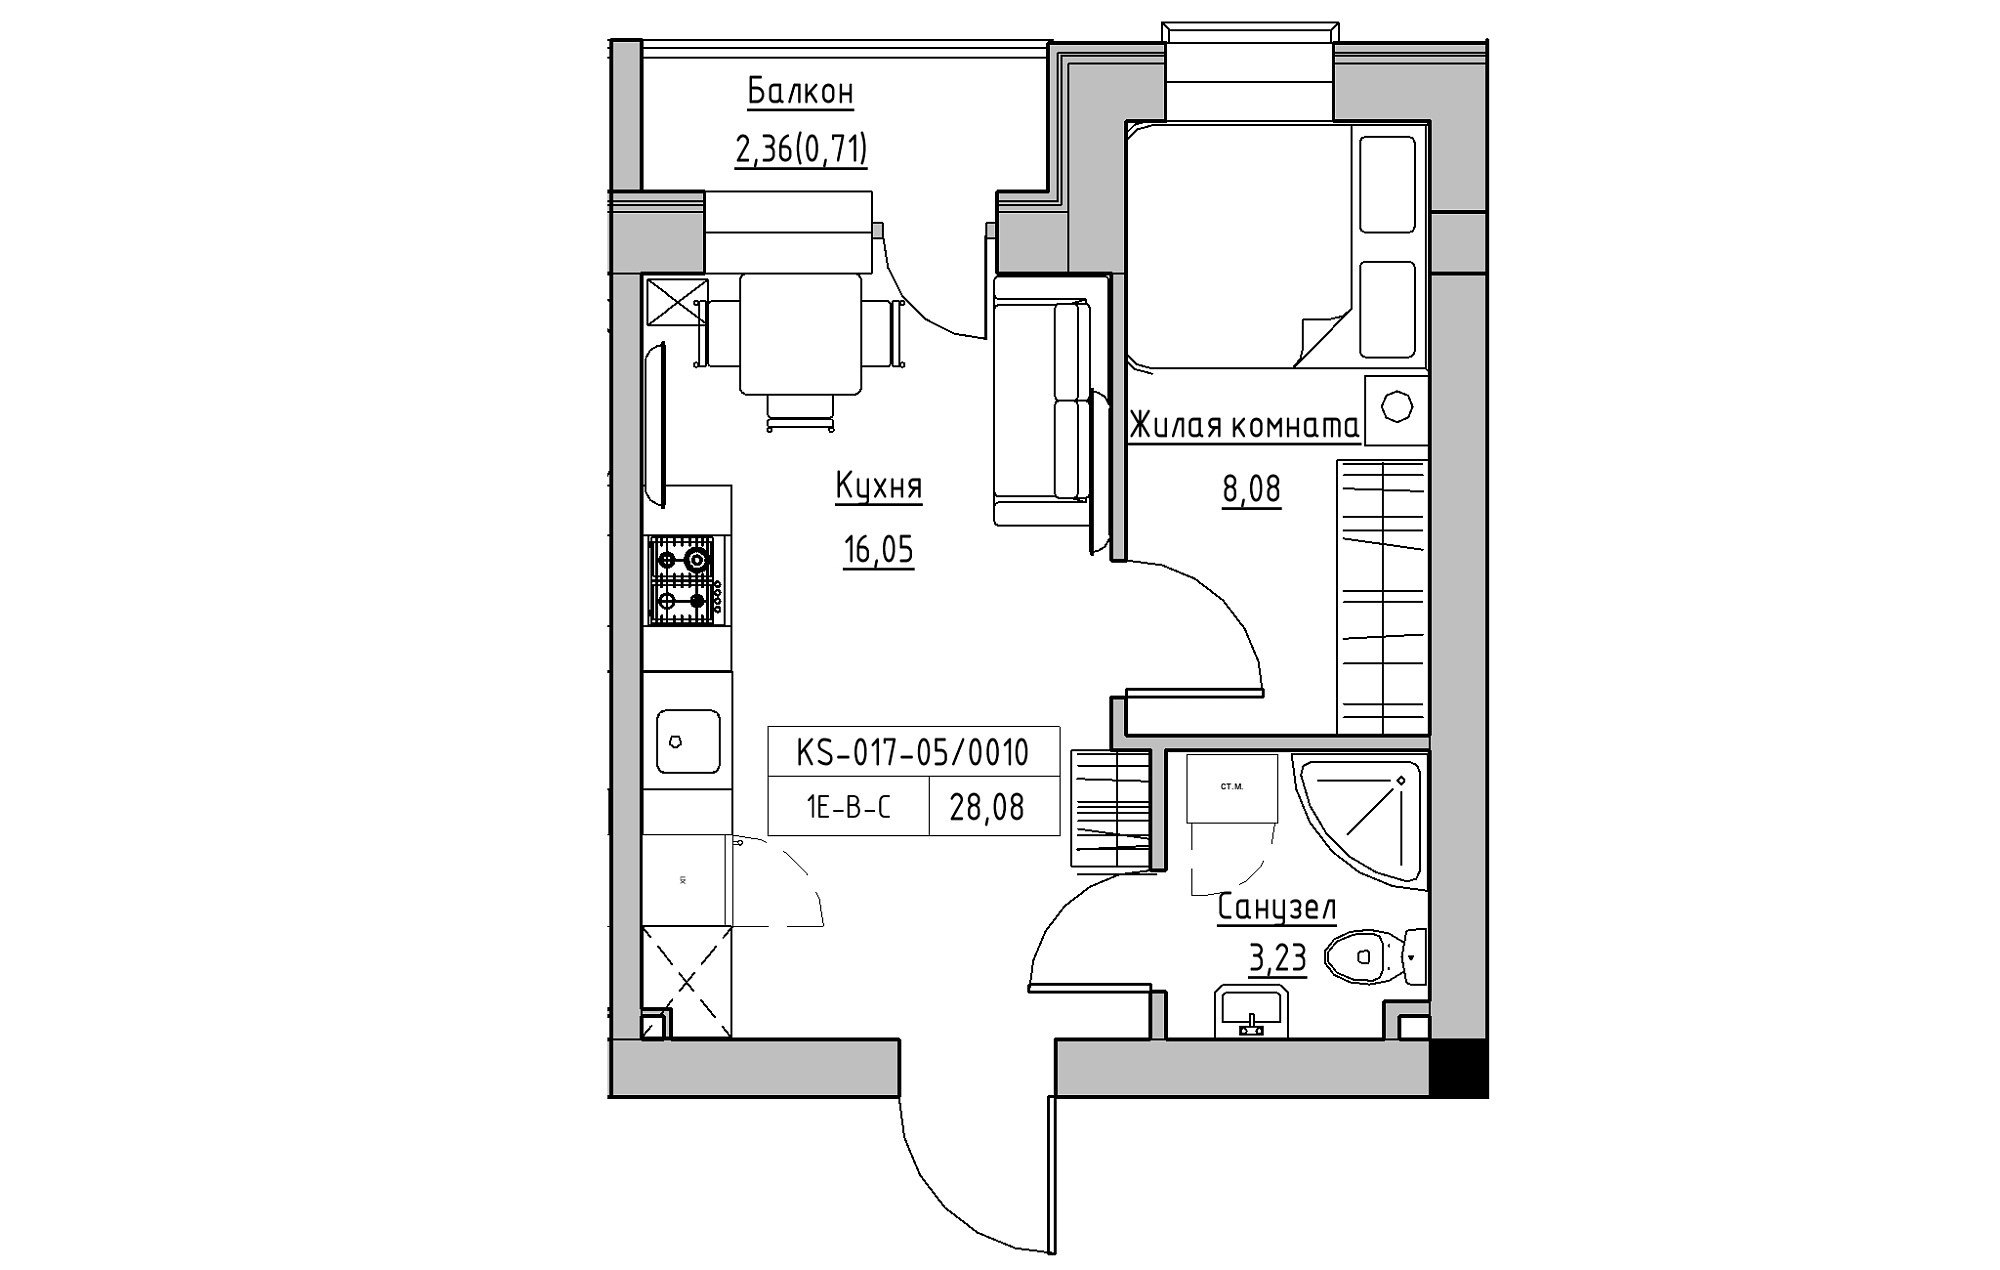 Планування 1-к квартира площею 28.08м2, KS-017-05/0010.